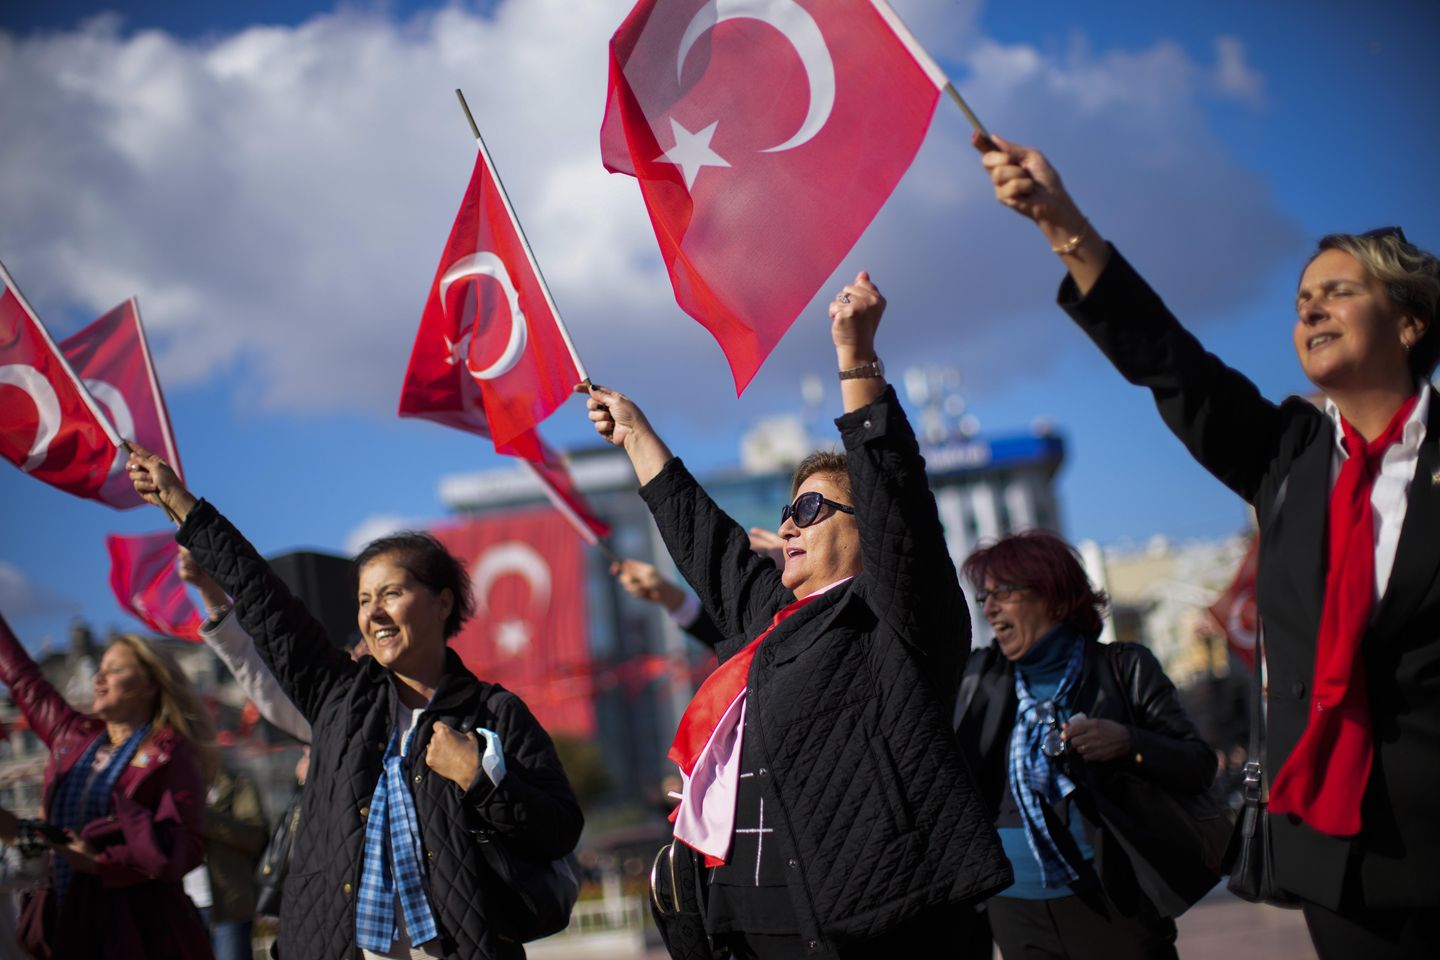 ABD, ülke adı için Türkiye'nin tercih ettiği yazılışı benimsiyor: Türkiye